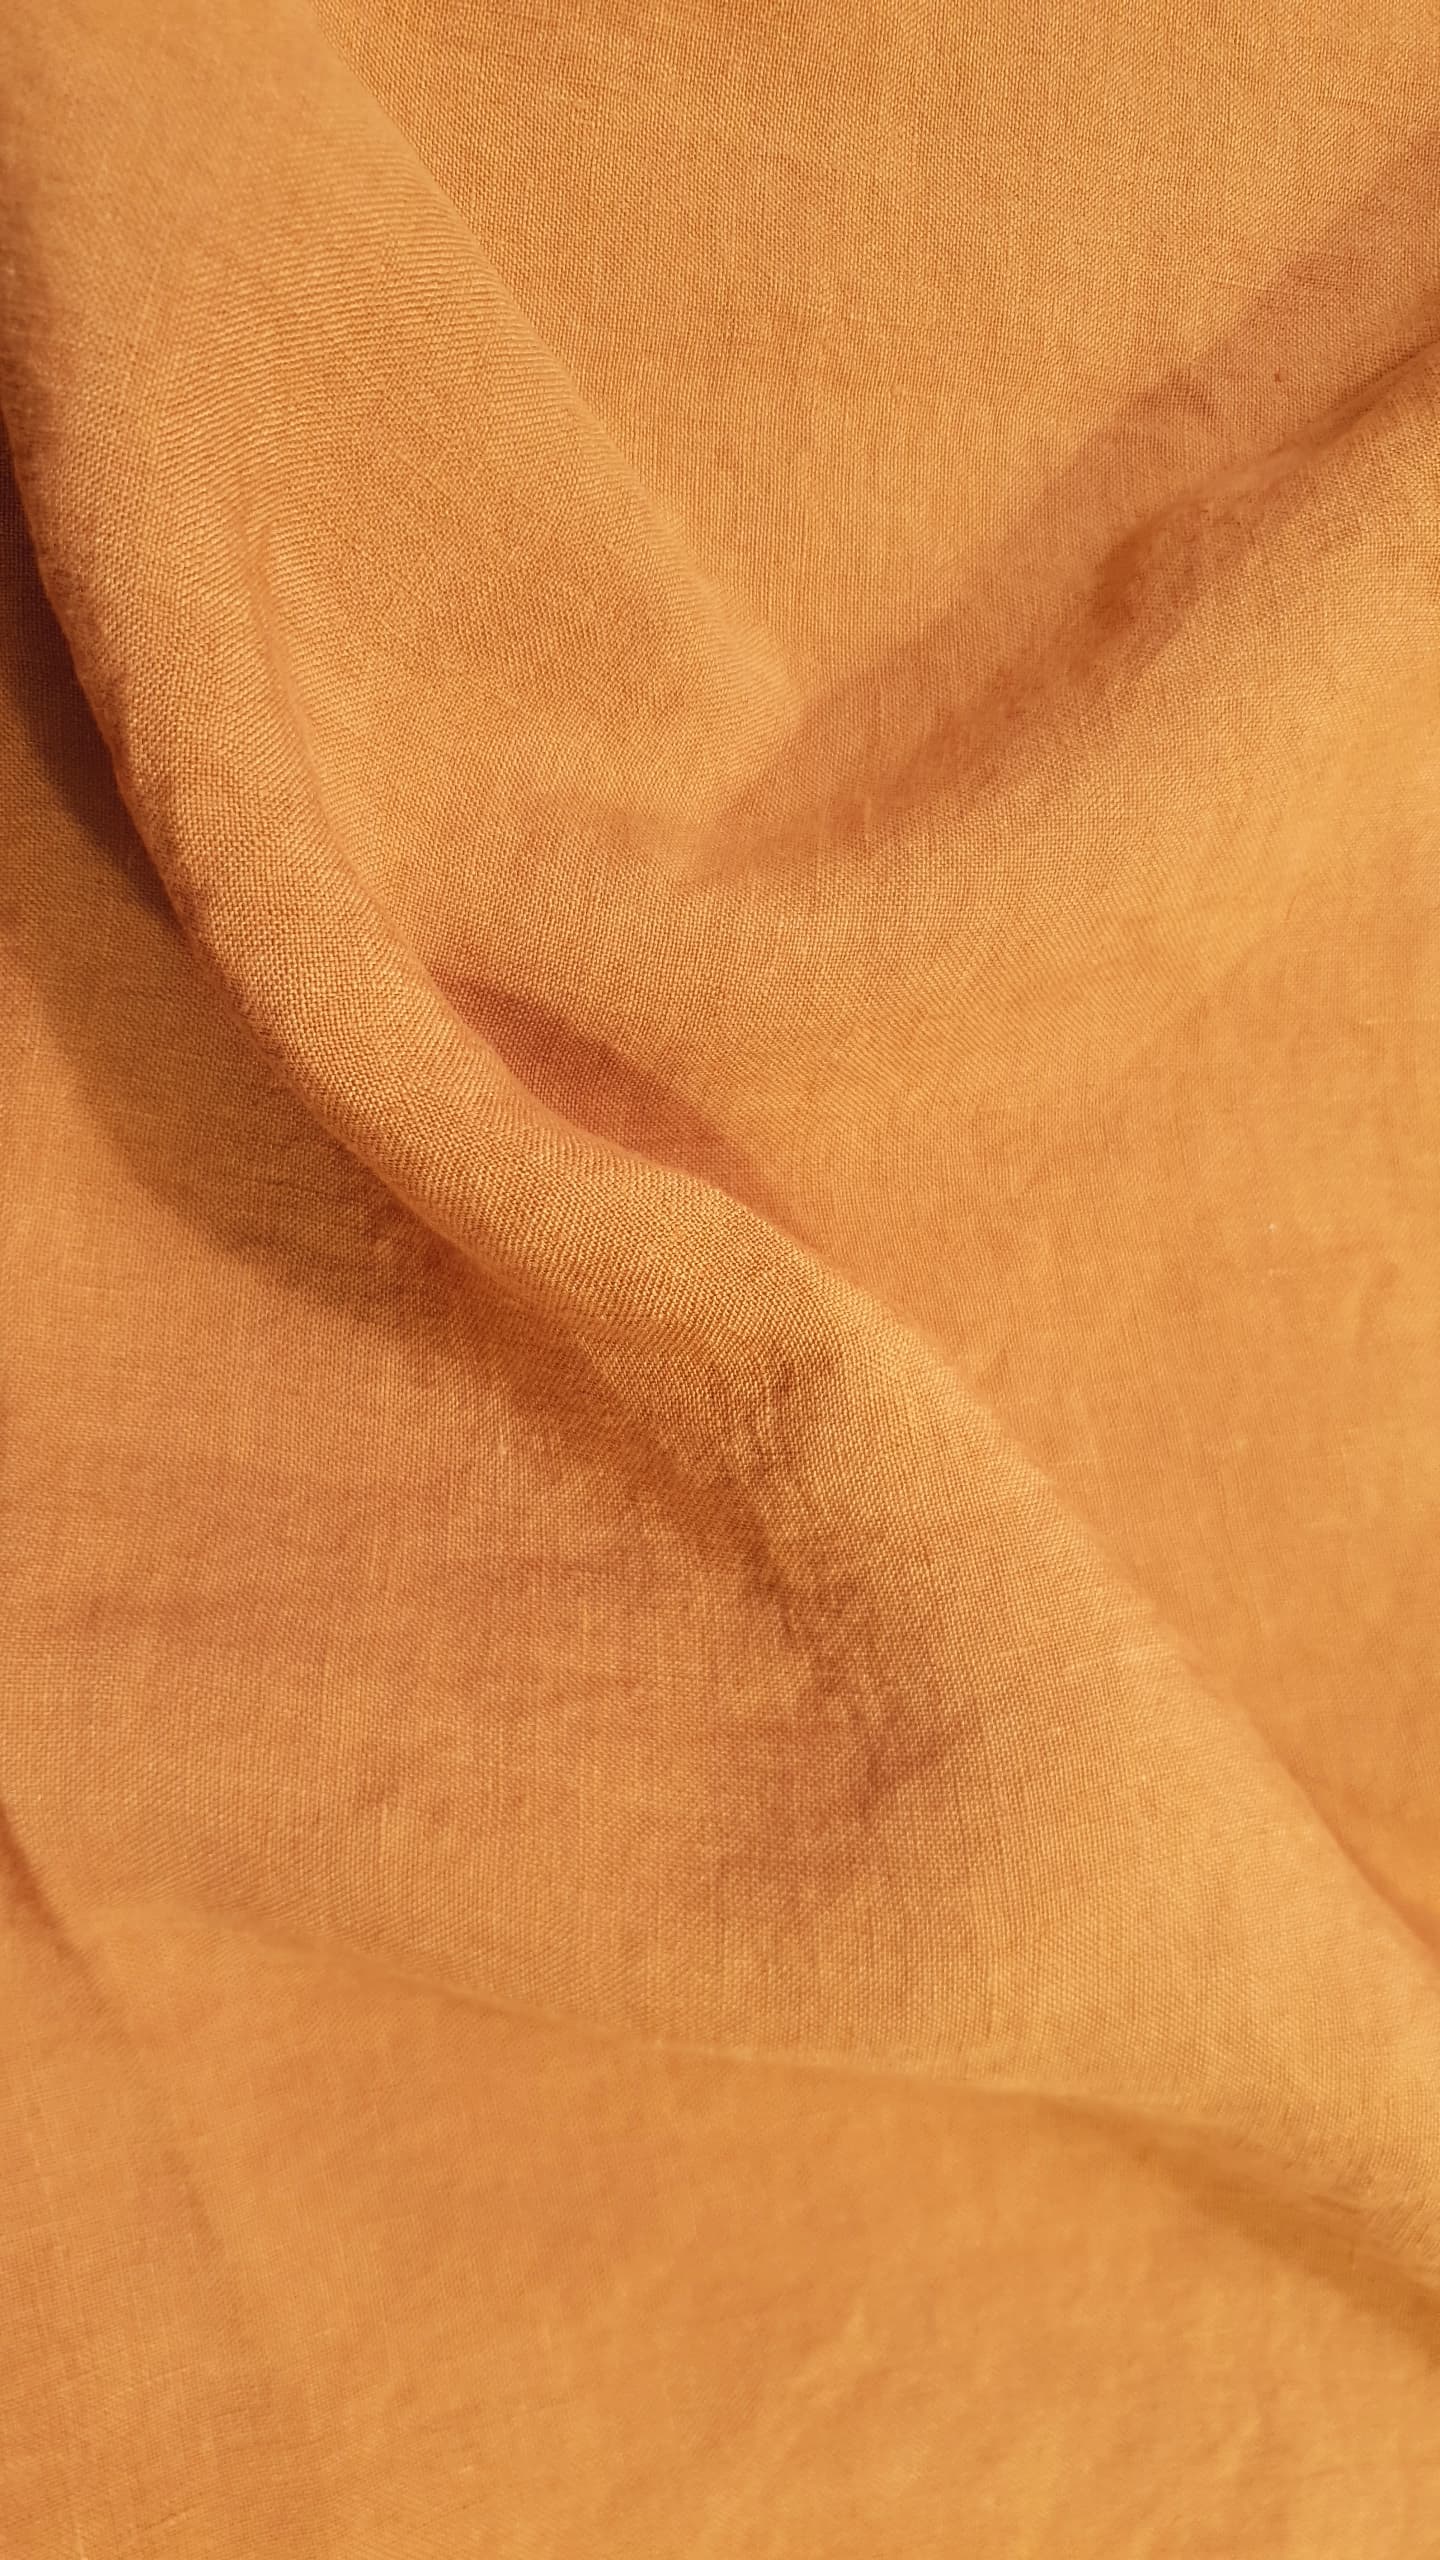 WIDE Medium prewashed linen 150g- Burnt orange